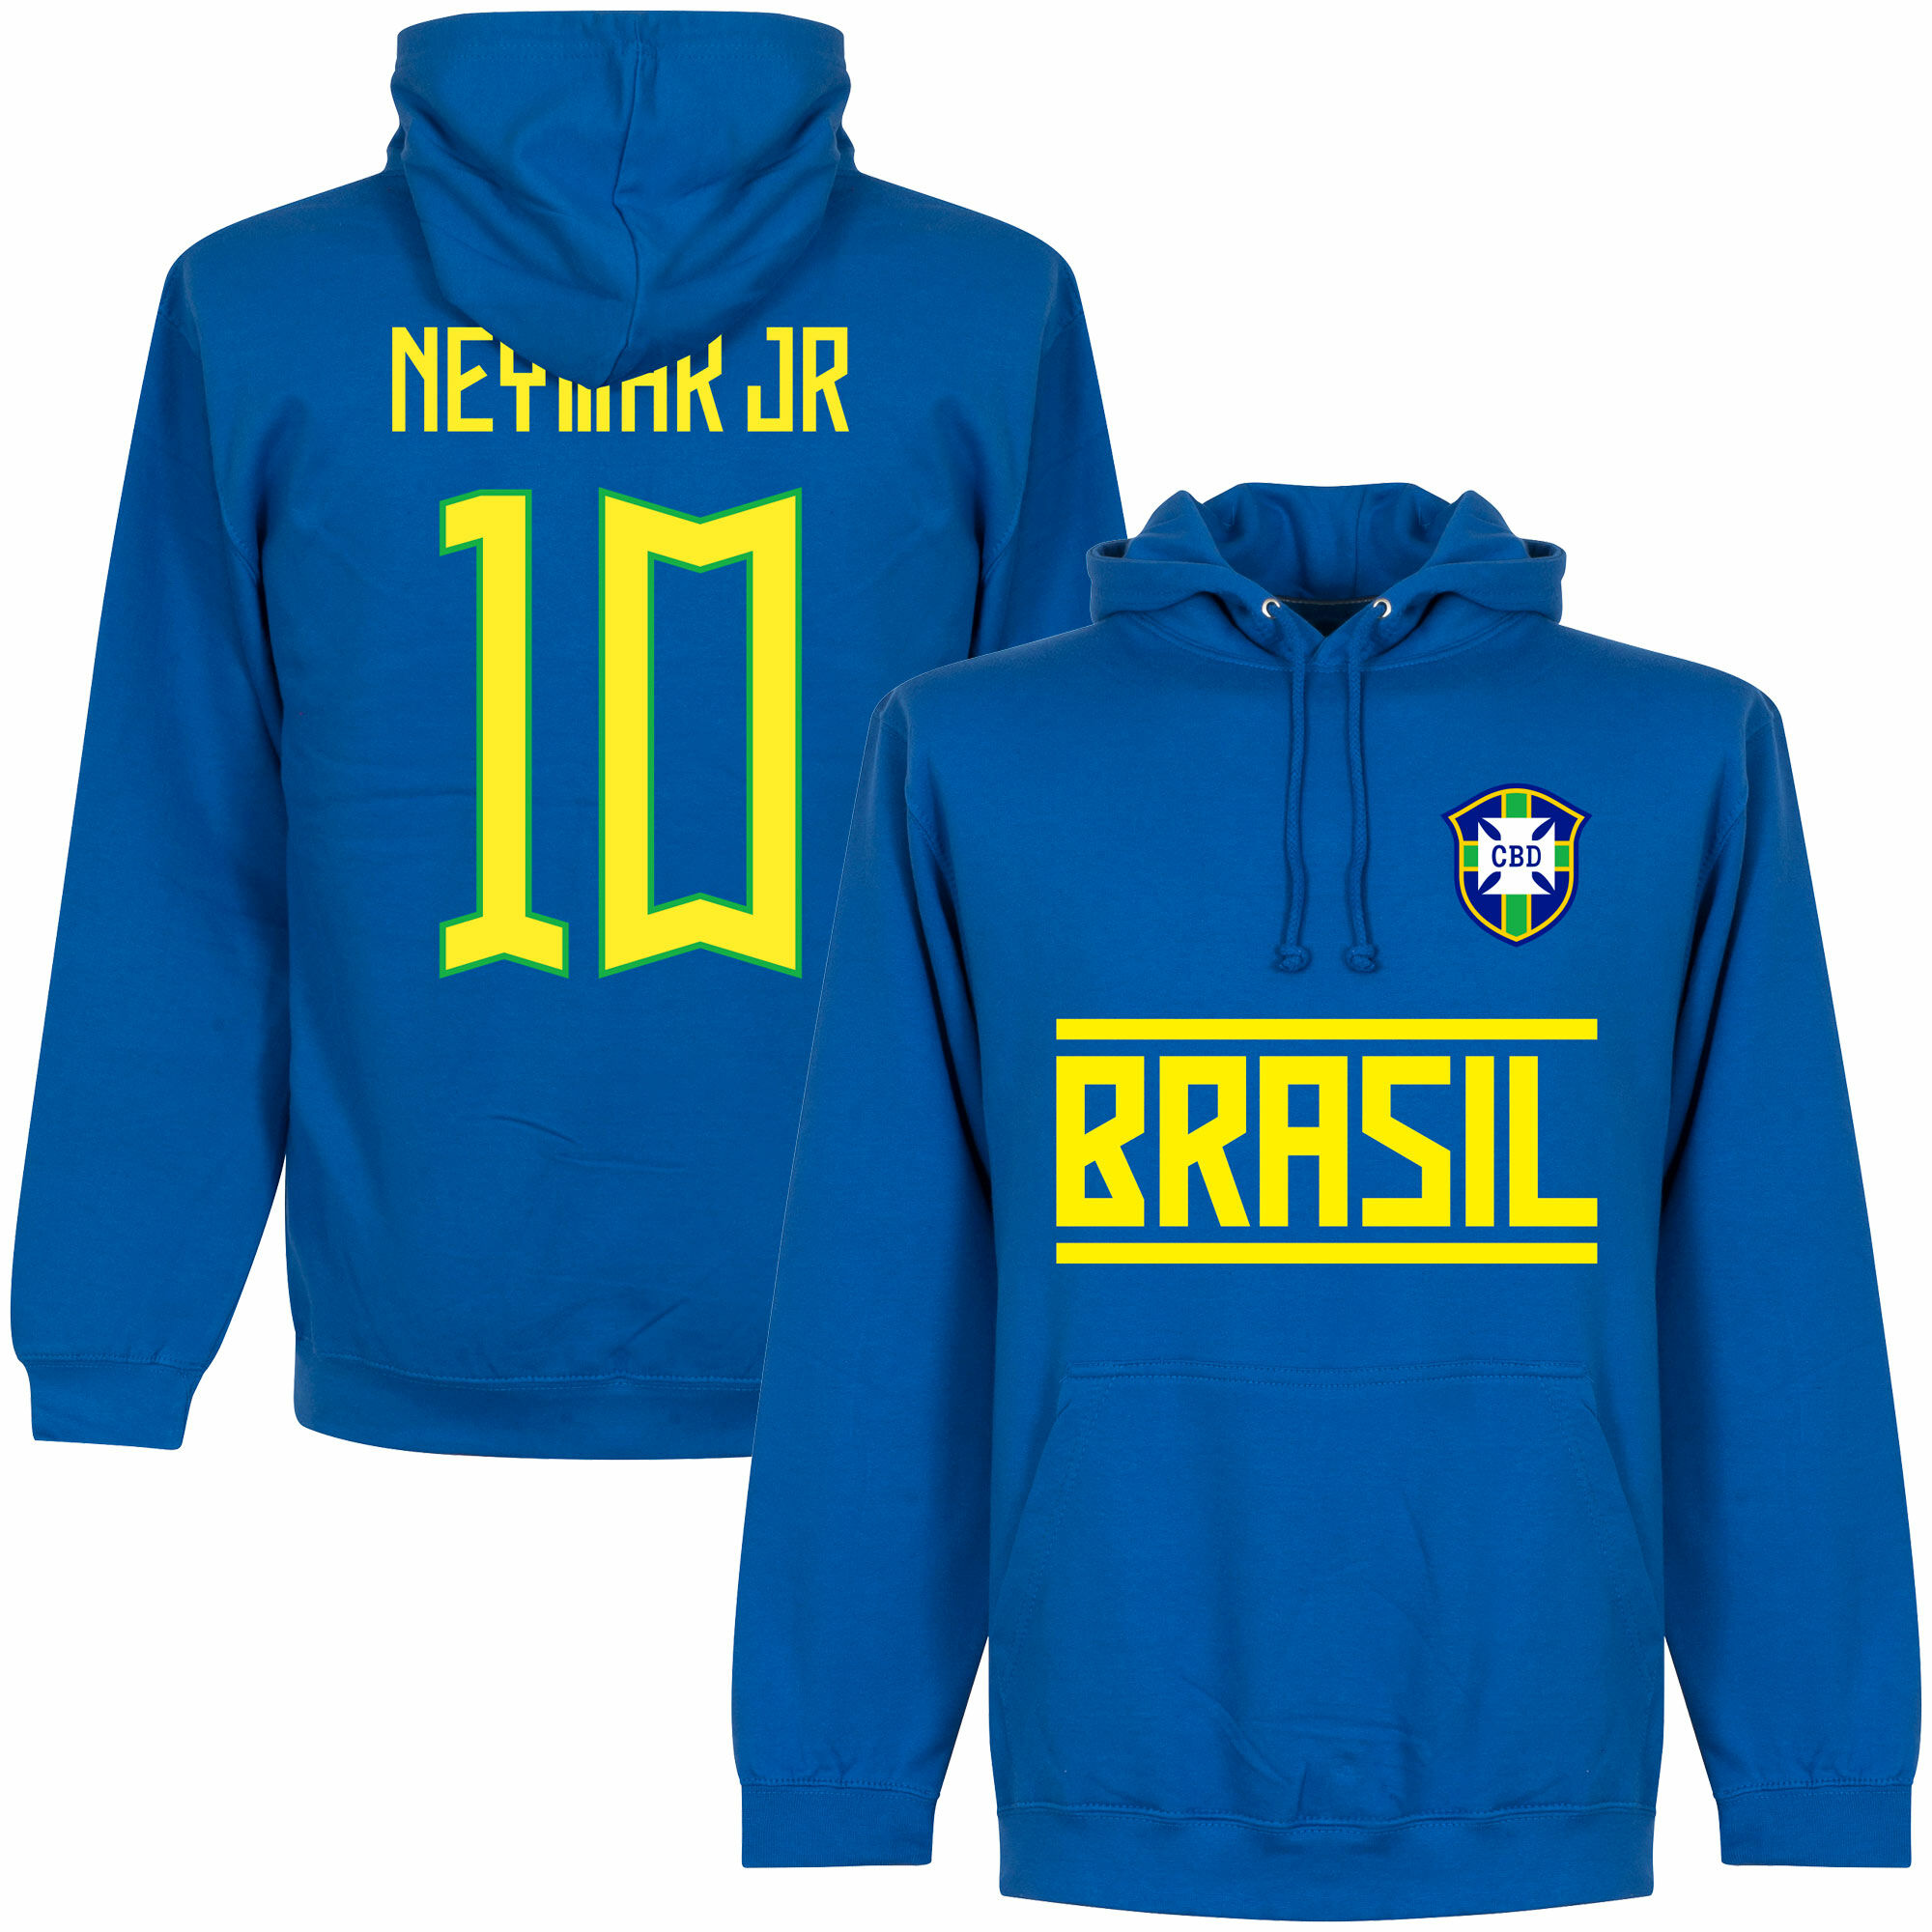 Brazílie - Mikina s kapucí - modrá, číslo 10, Neymar